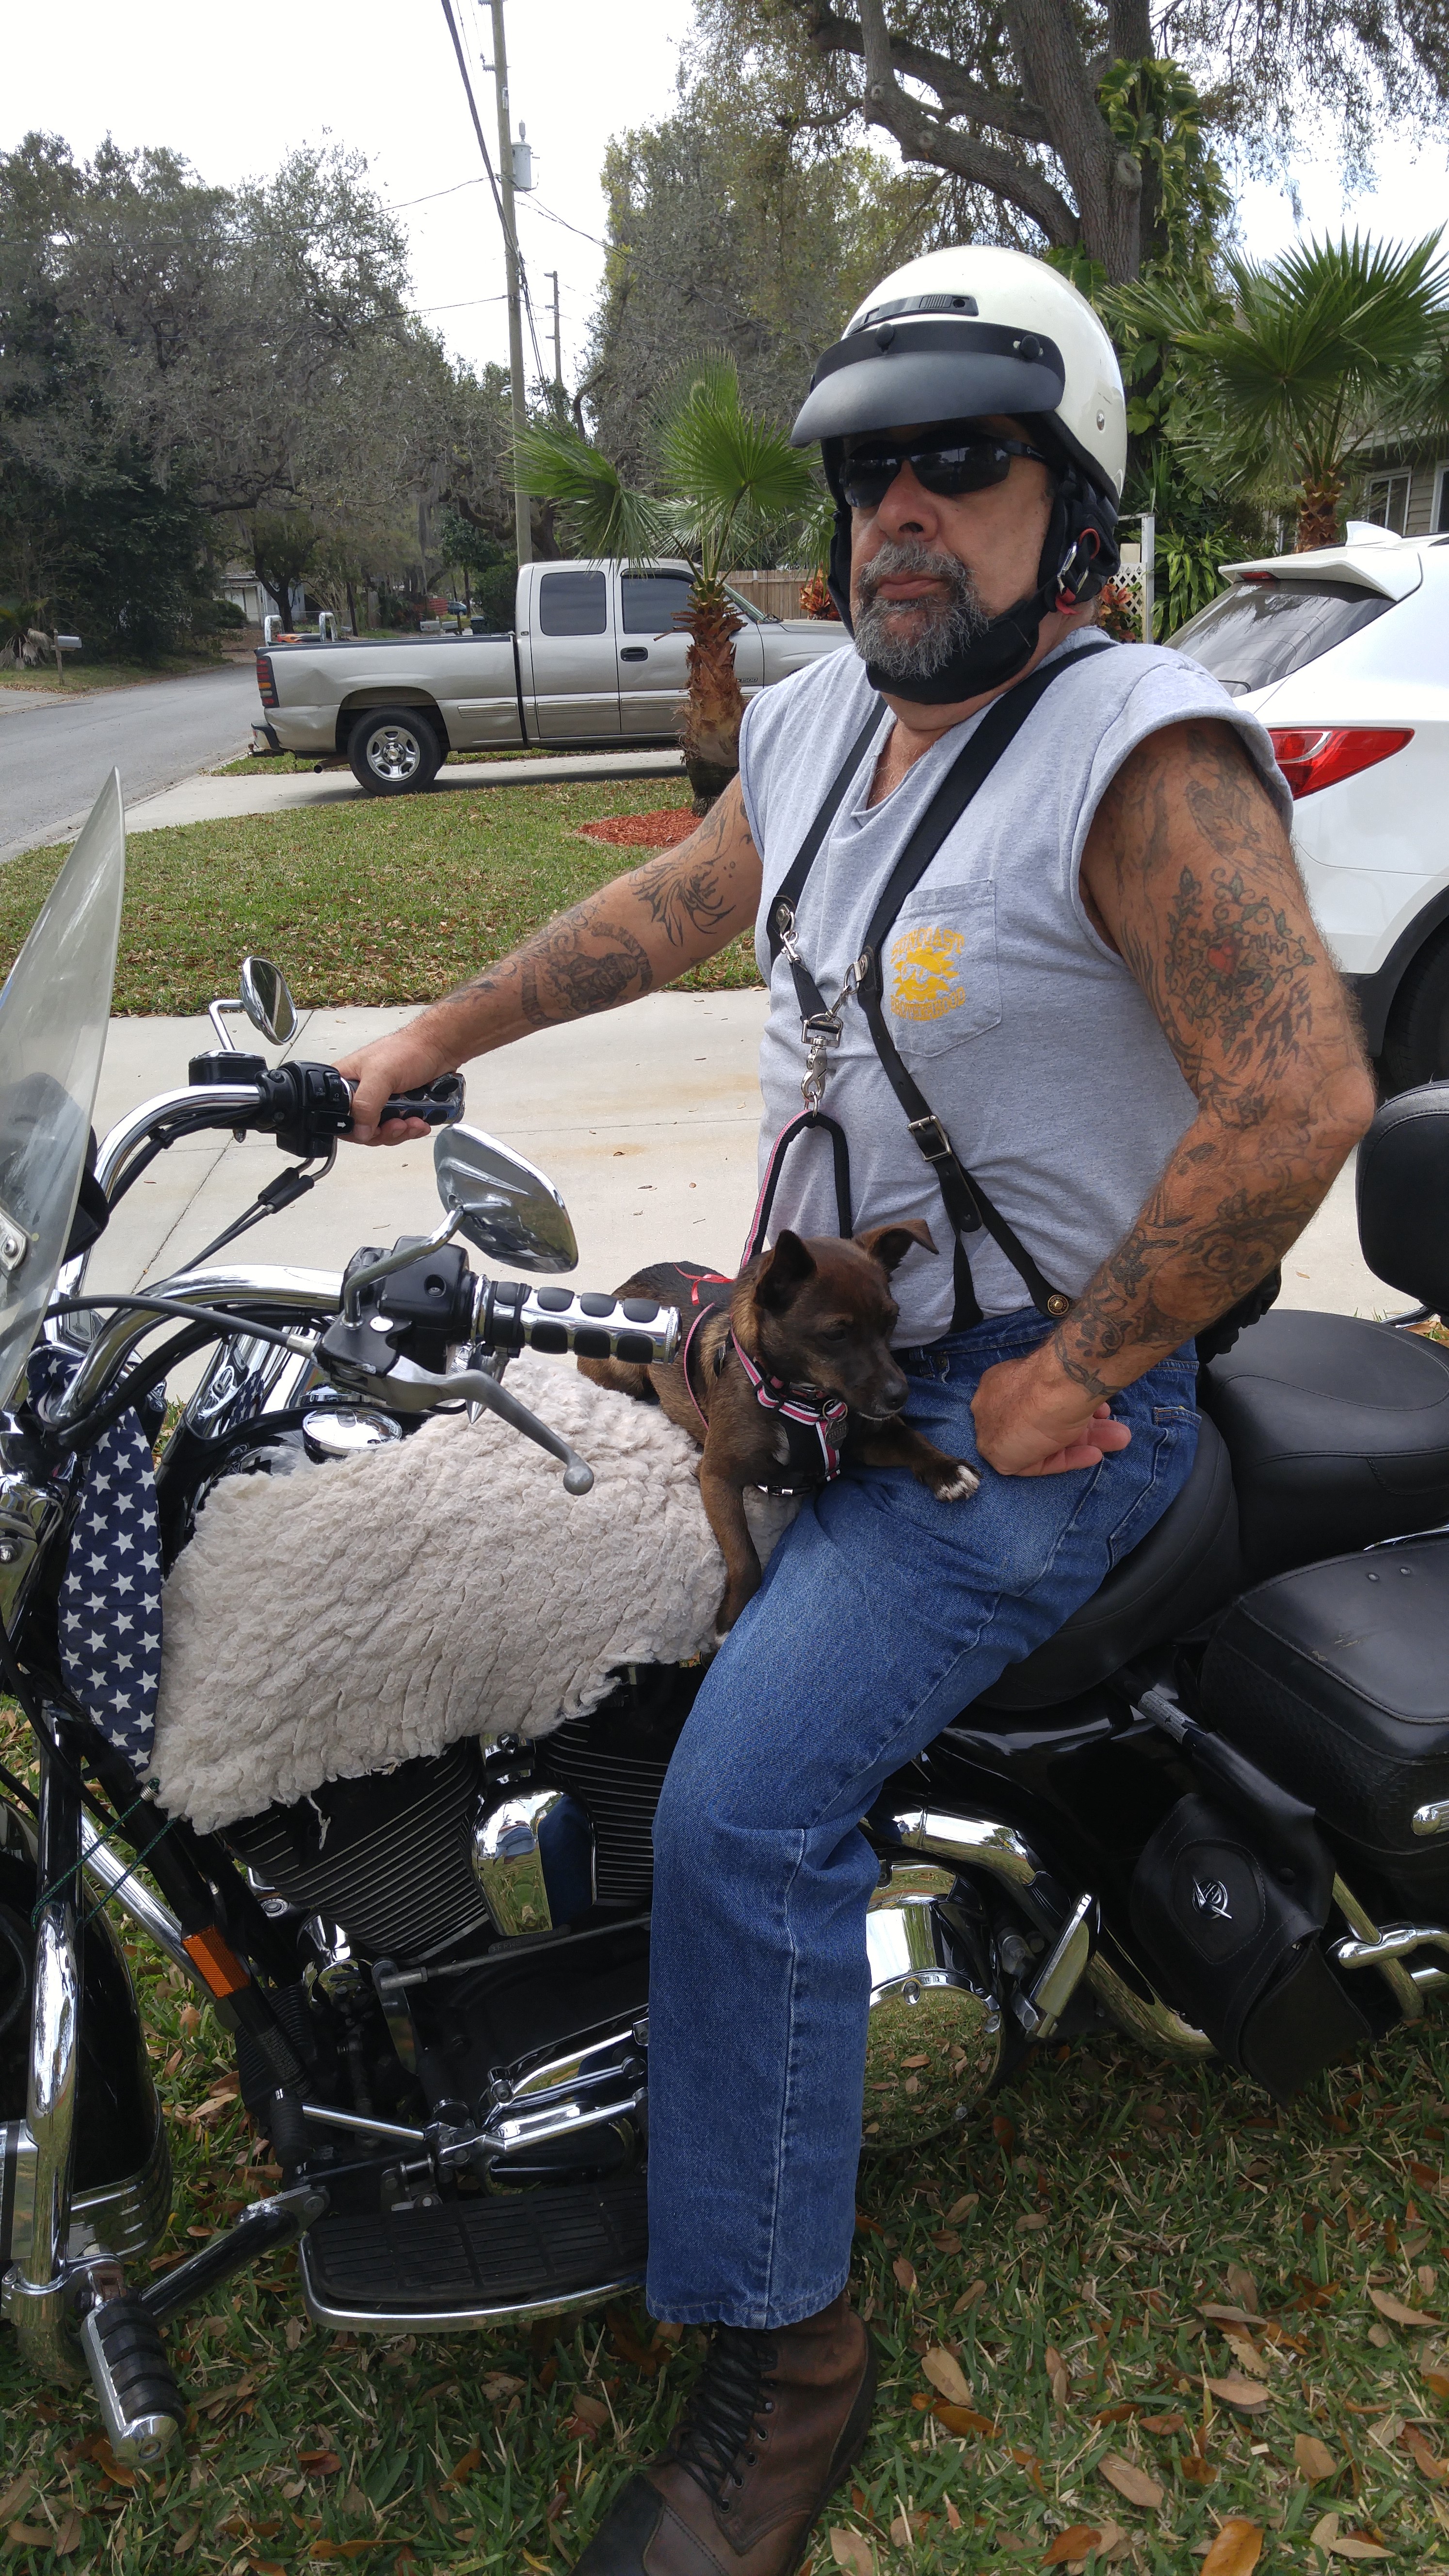 biker over 50